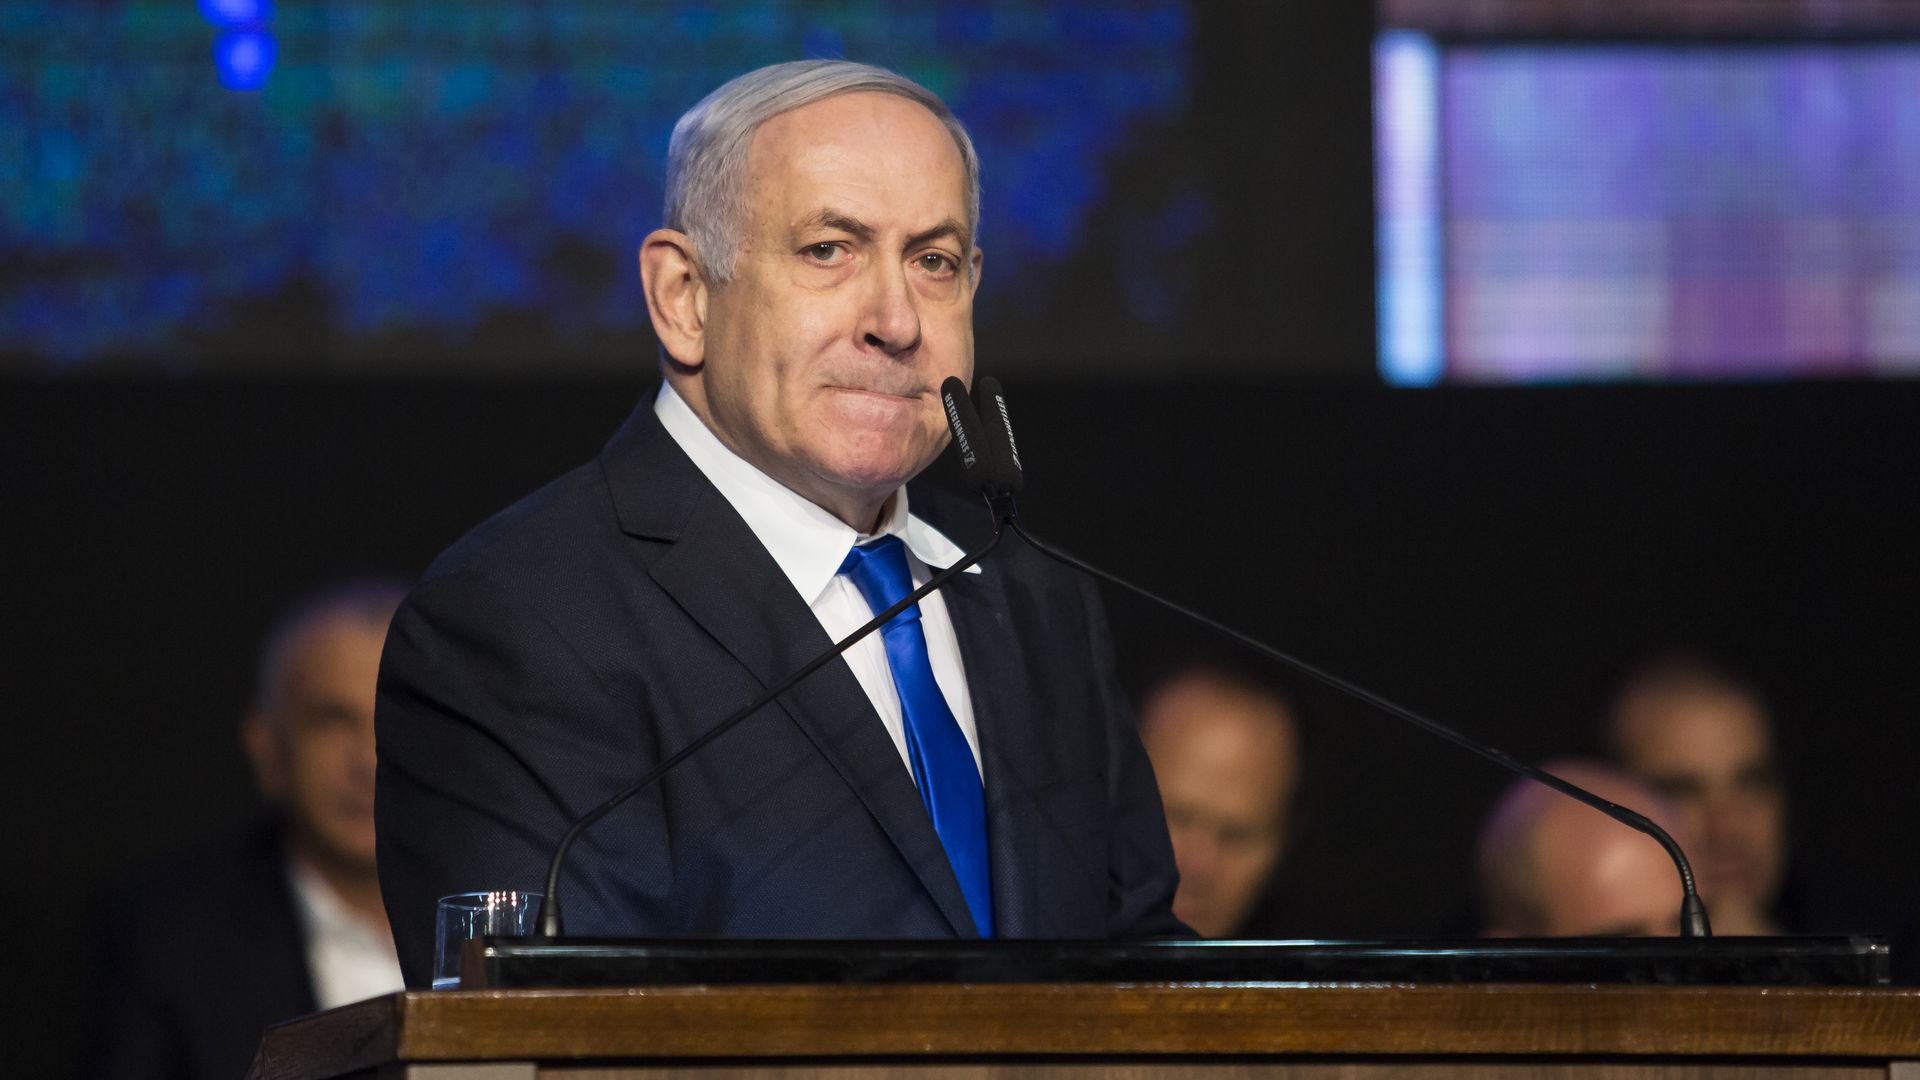 Israeli Prime Minister Benjamin Netanyahu at a podium